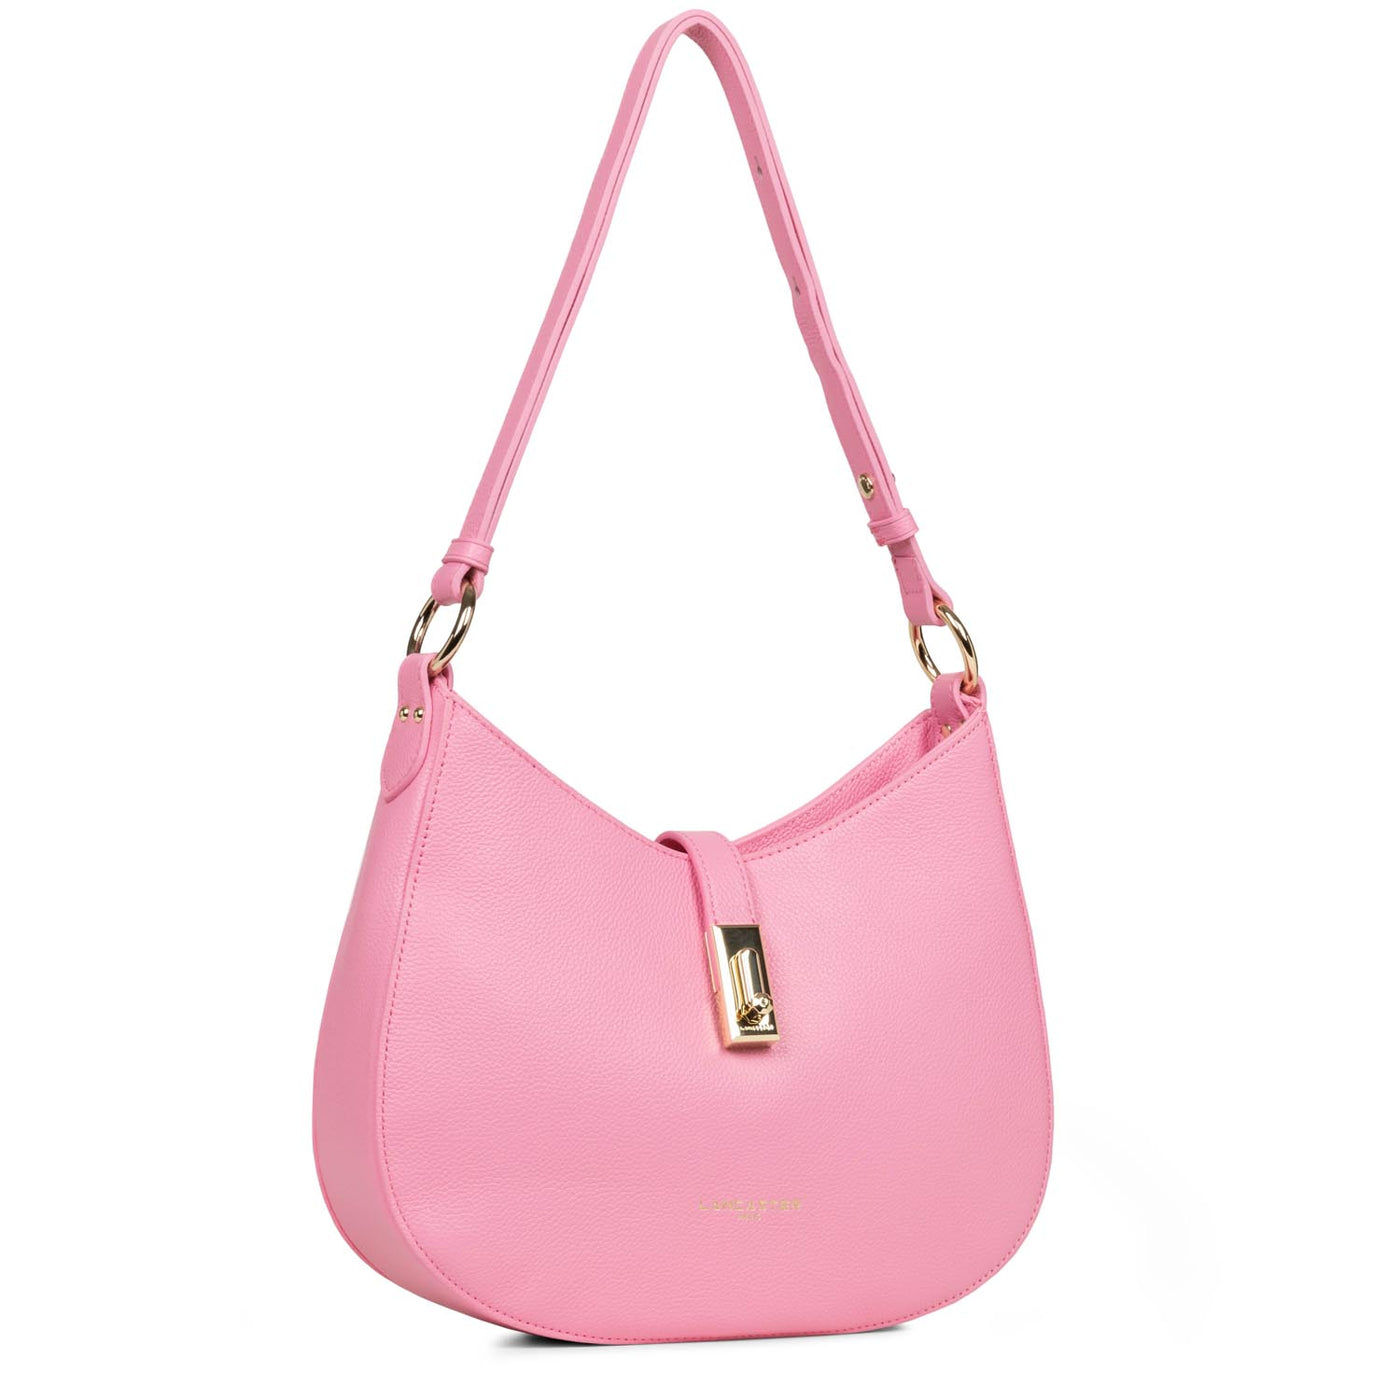 m shoulder bag - foulonné milano #couleur_rose